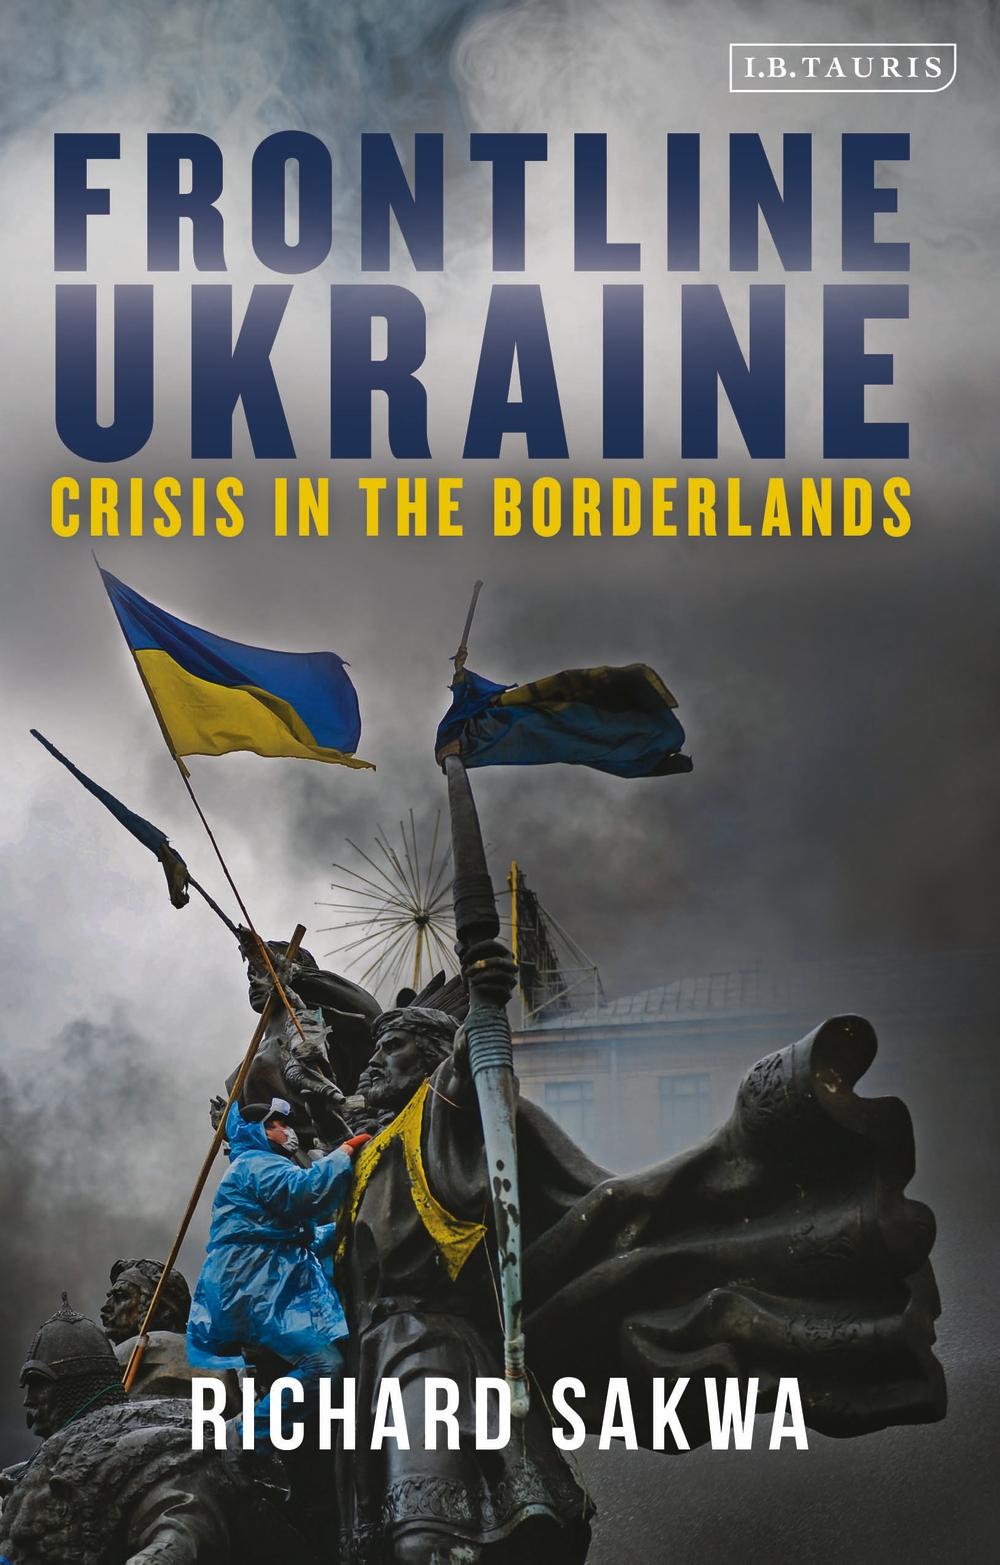 Frontline Ukraine